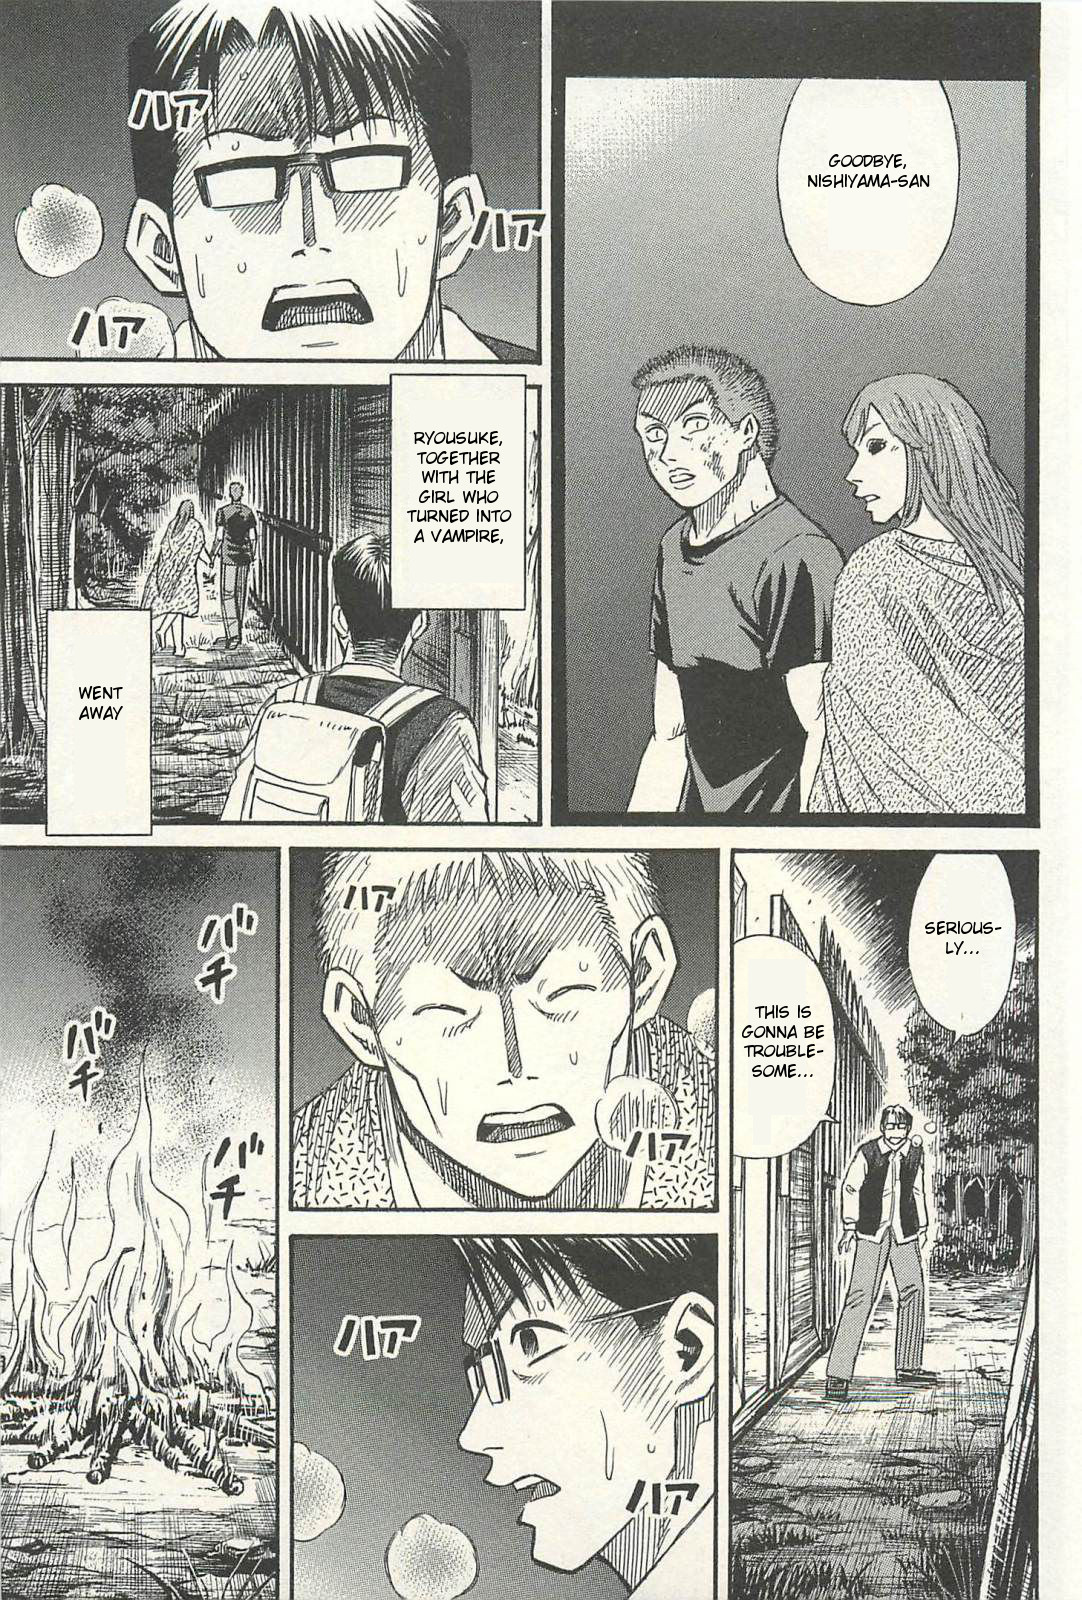 Higanjima Saigo no 47 Hiai Vol. 2 Ch. 17 Escape